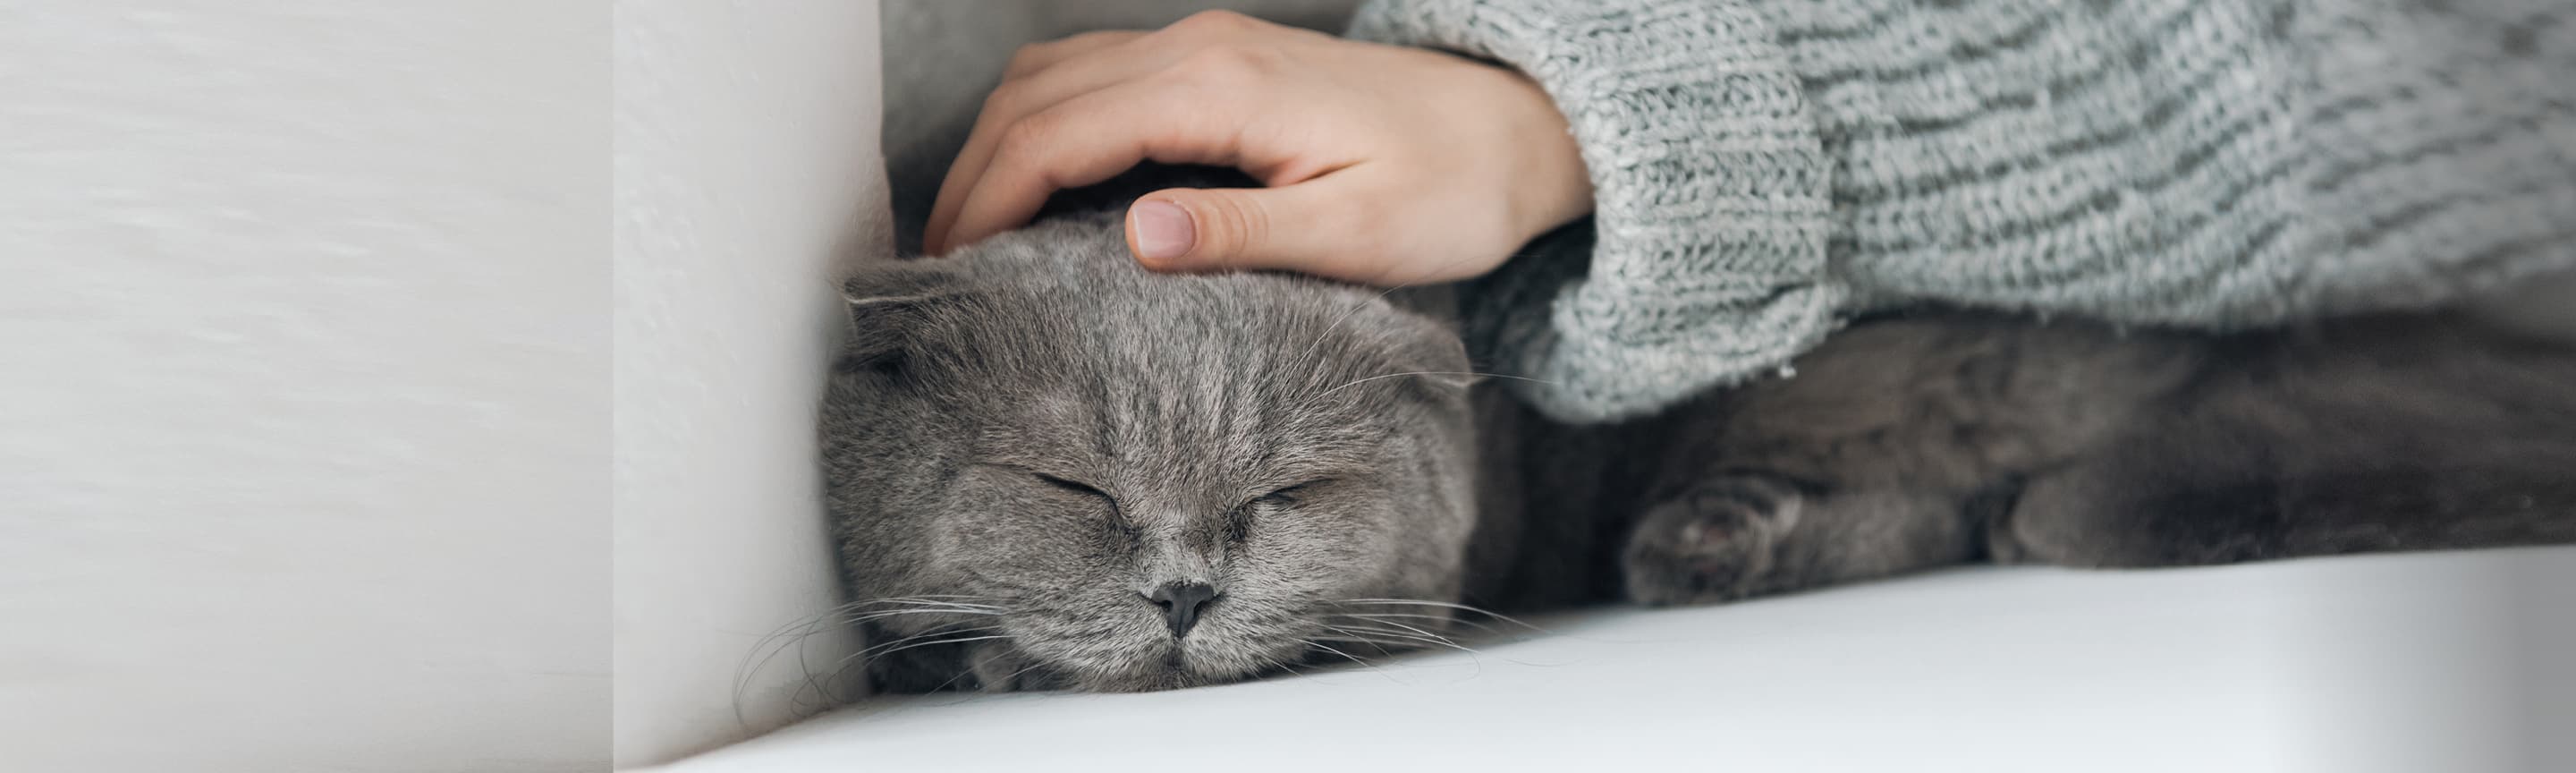 Как успокоить кошку в период течки?